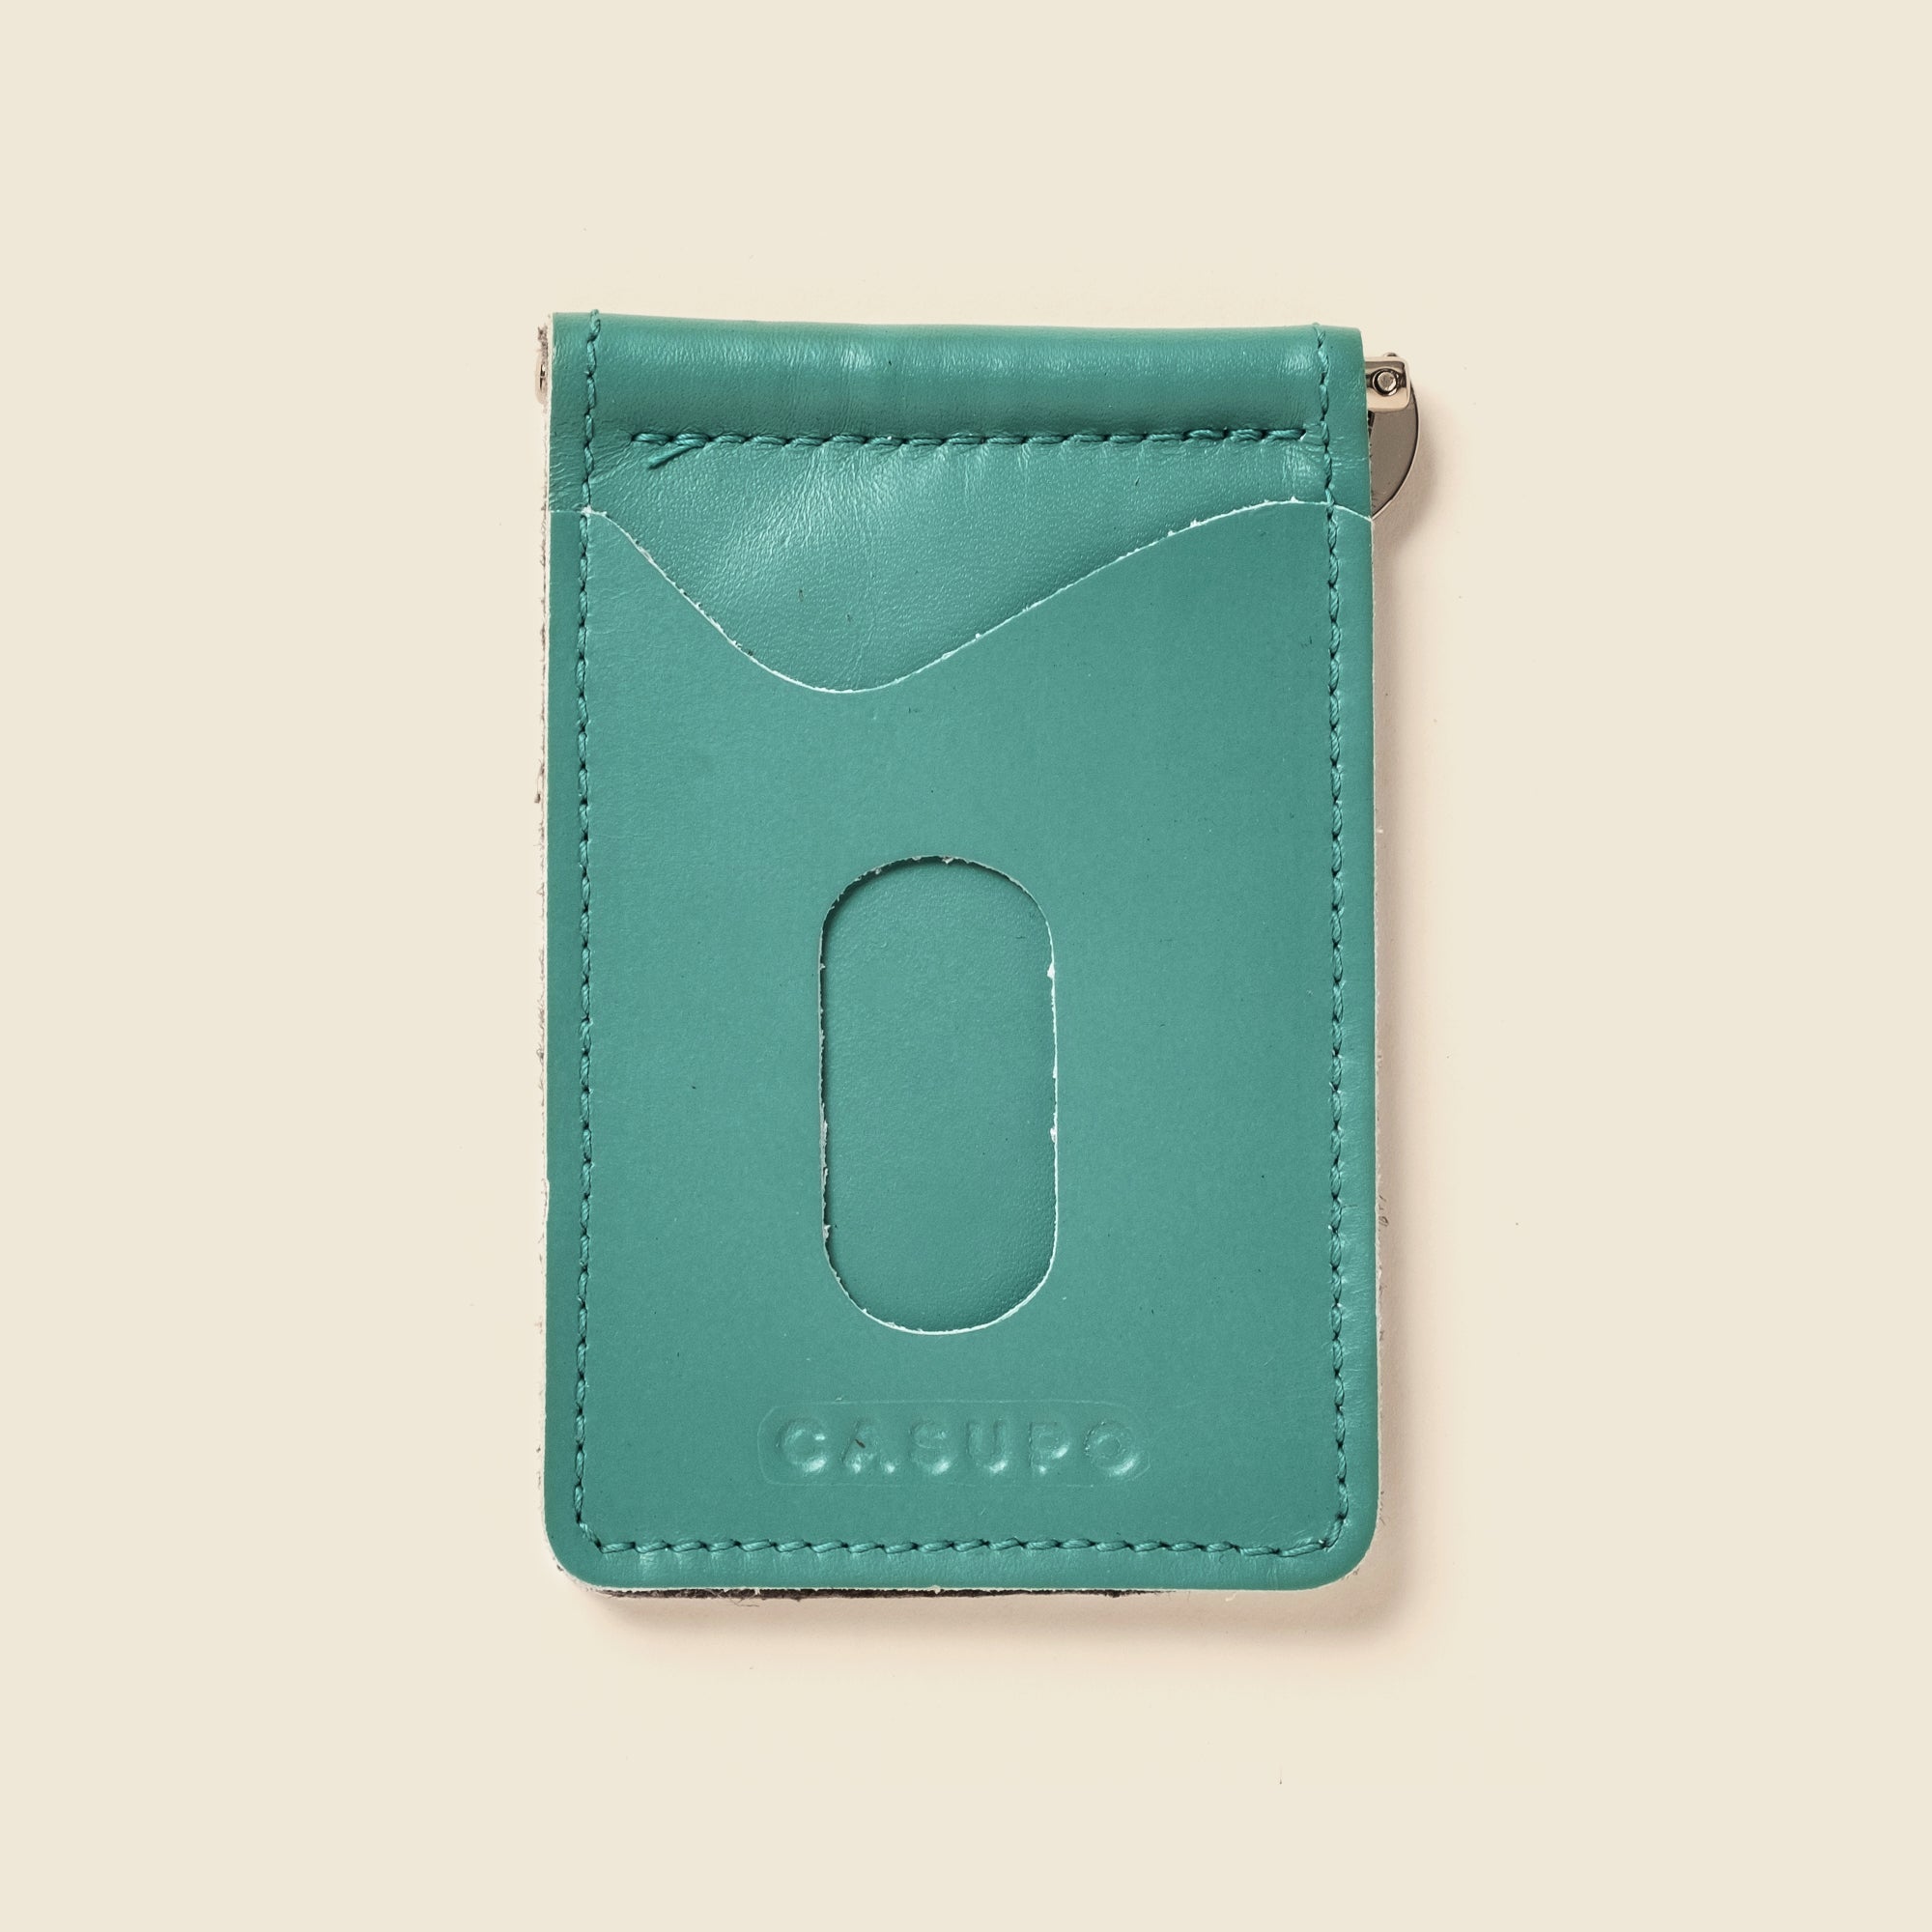 pastel blue, teal leather money clip wallet for men